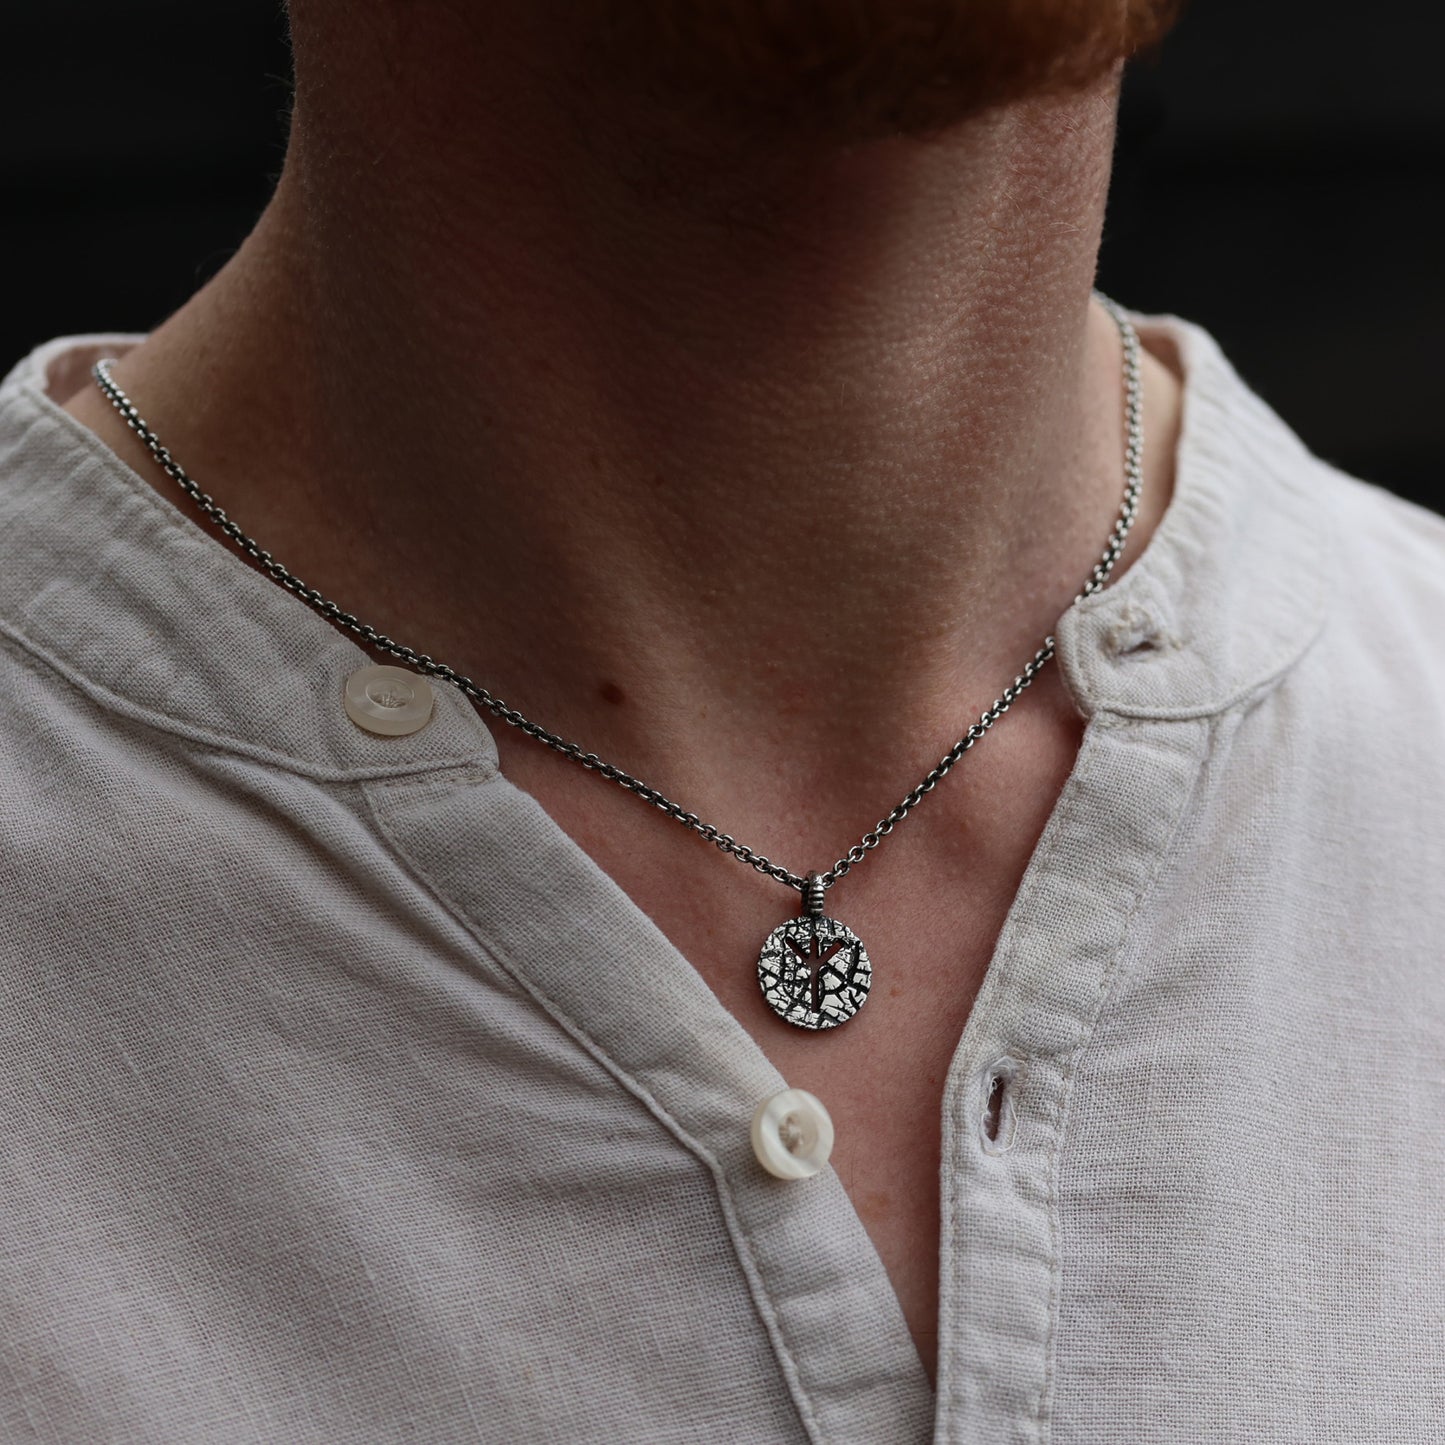 Pendant Necklace showcasing Norse mythology-inspired Algiz Symbol.